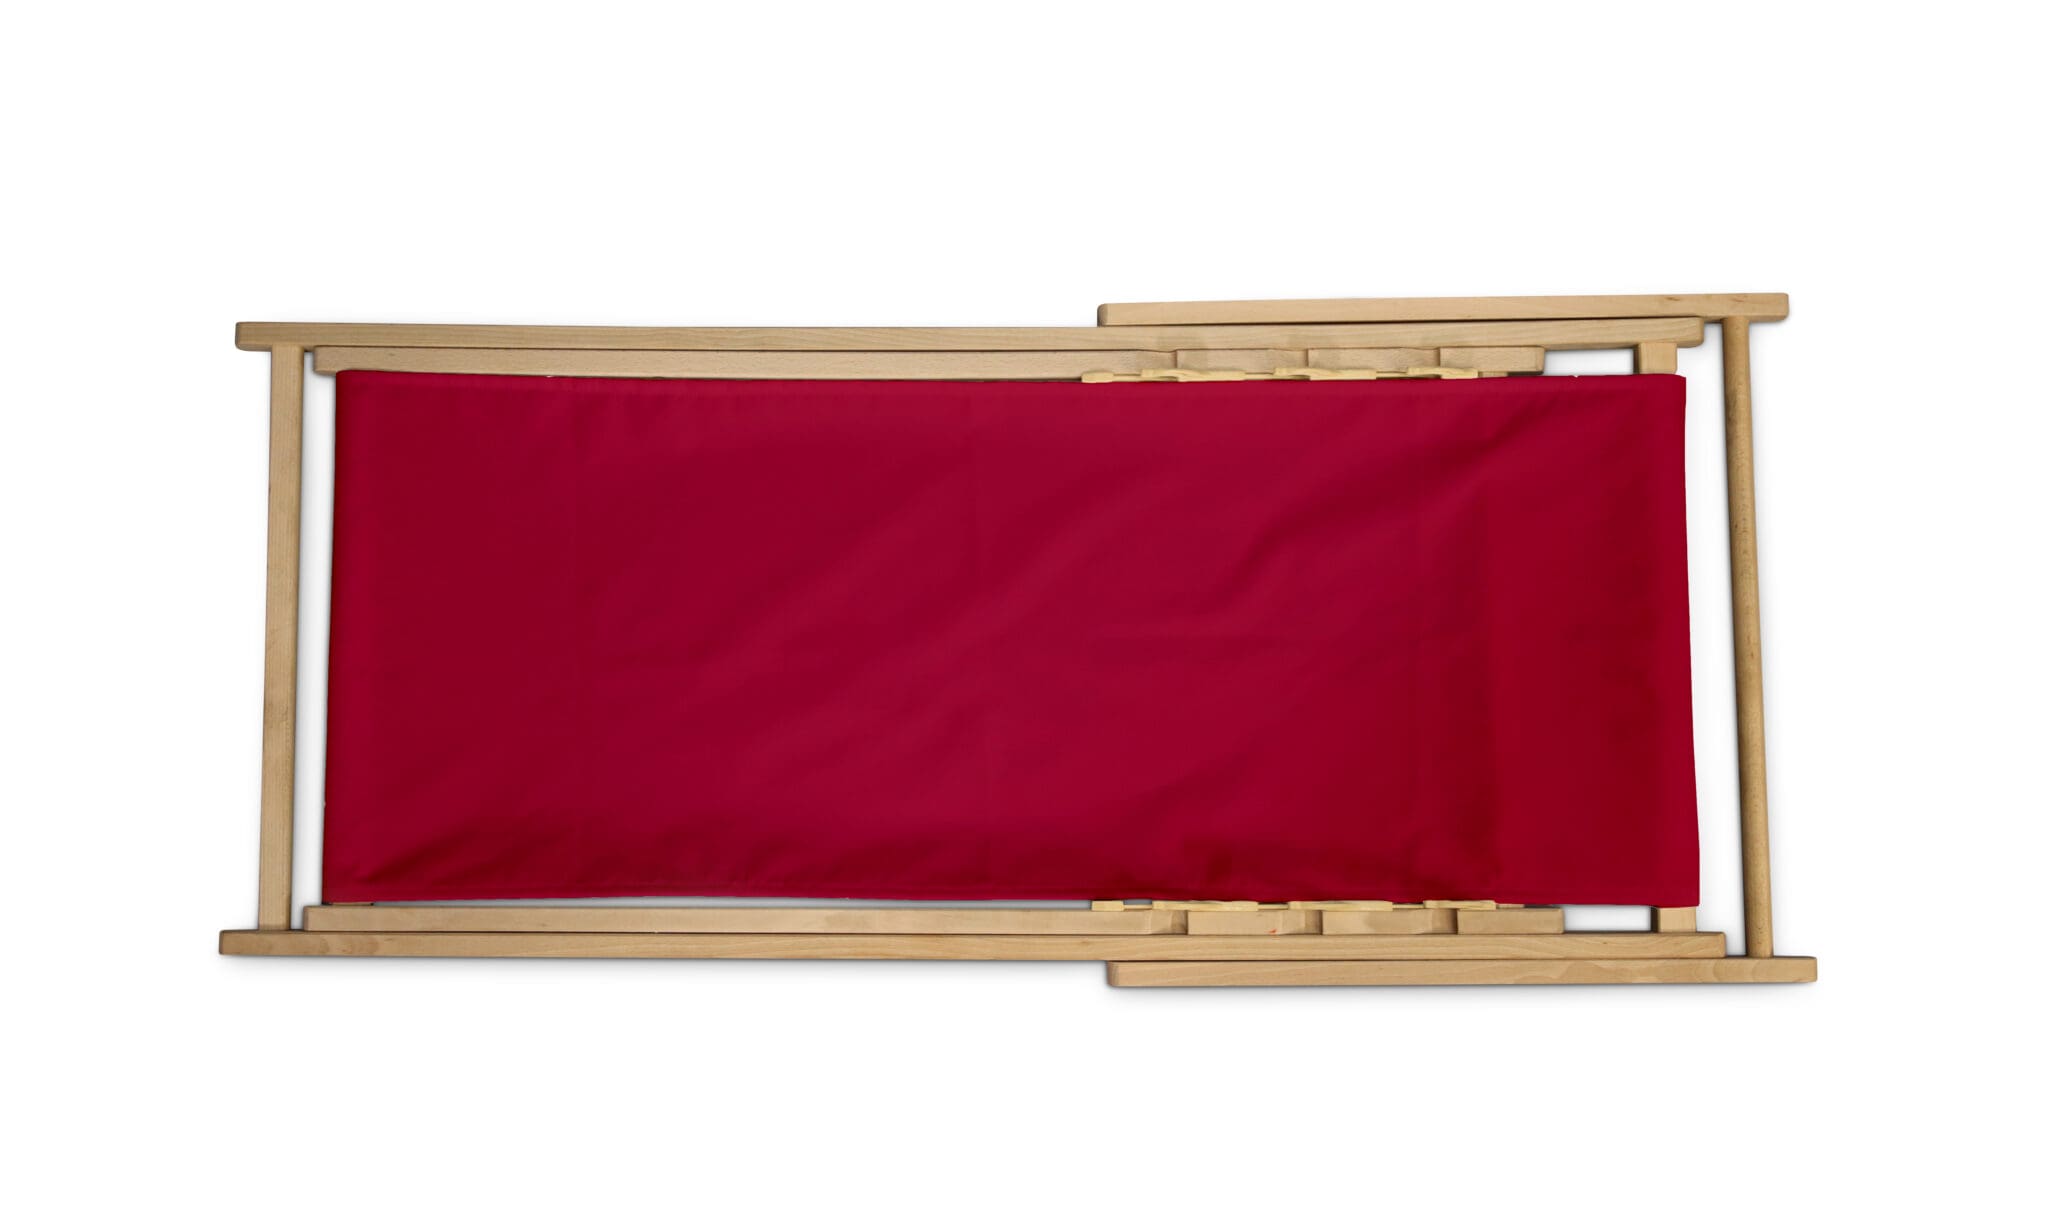 Deckchair – Folded flat top view